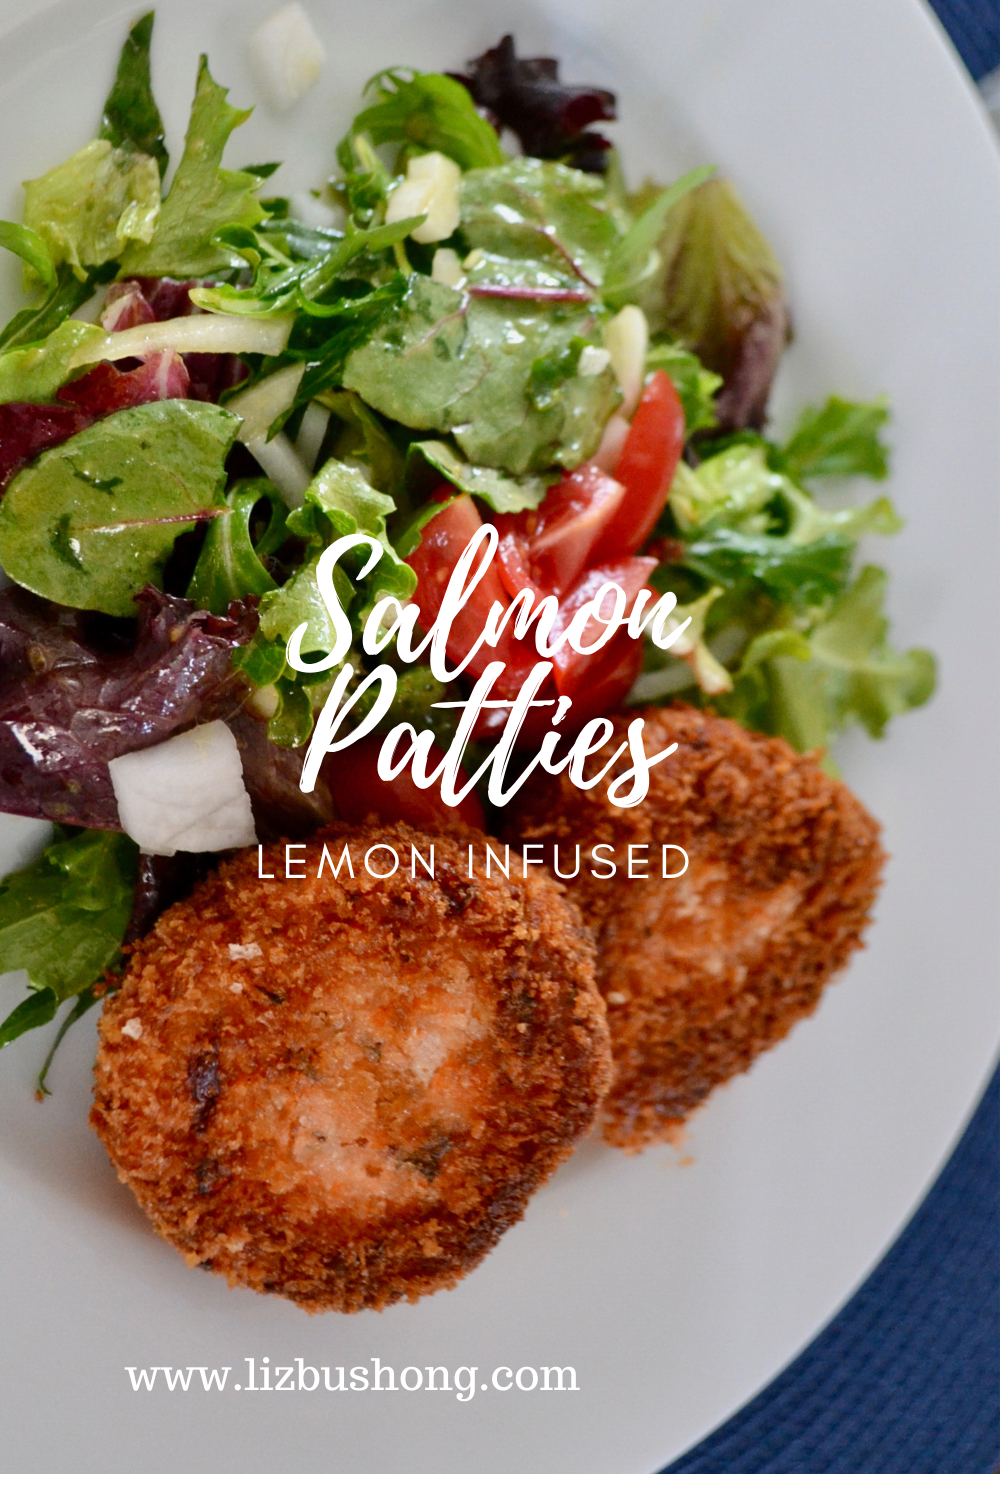 Lemon Infused Salmon Patties Recipe lizbushong.com